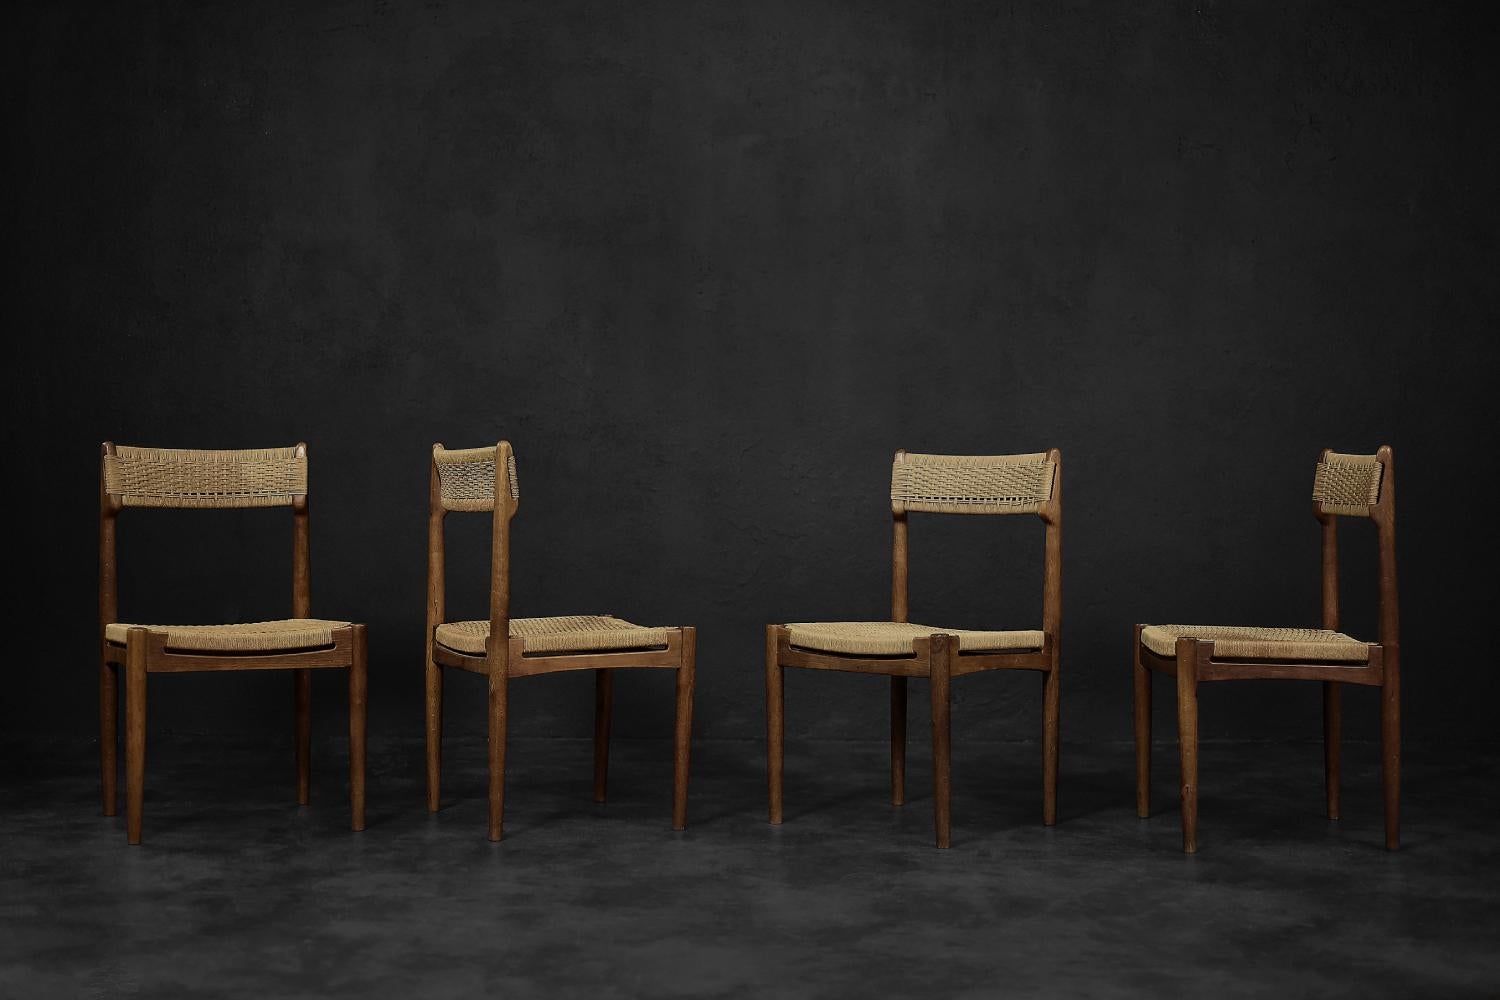 Cet ensemble de quatre chaises modernistes a été conçu par E. Knudsen et fabriqué par le fabricant de meubles danois K. Knudsen & Søn en 1952. Ce modèle a été exposé pour la première fois au congrès de Federica, où il a été conçu. Le cadre est en